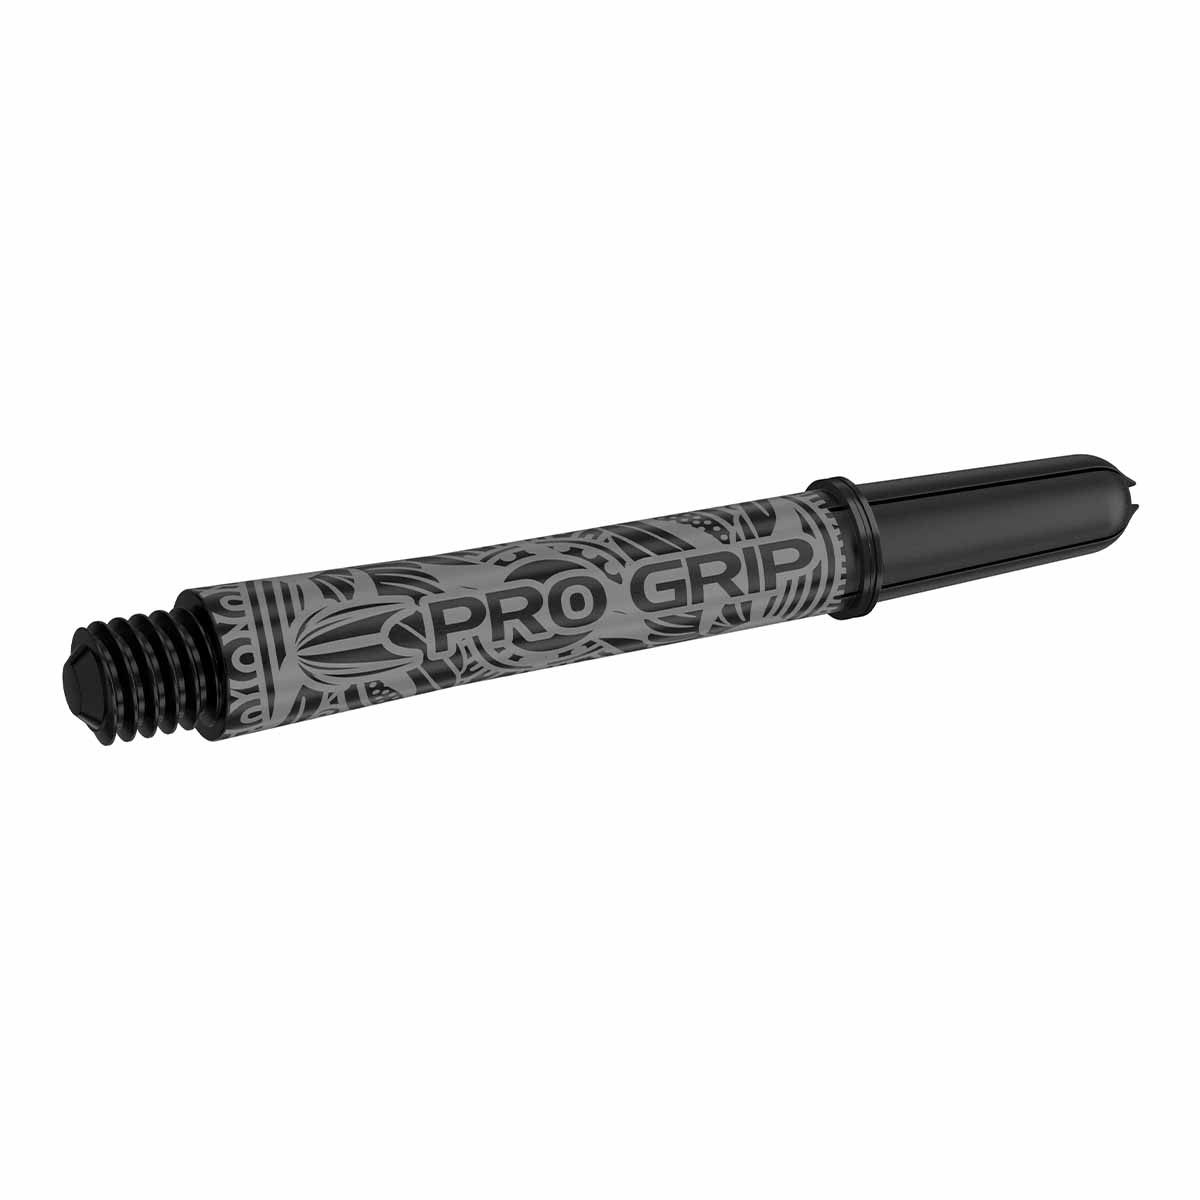 Target INK Pro Grip Shaft Black/Schwarz (versch. L?ngen) Short 34 mm von TARGET